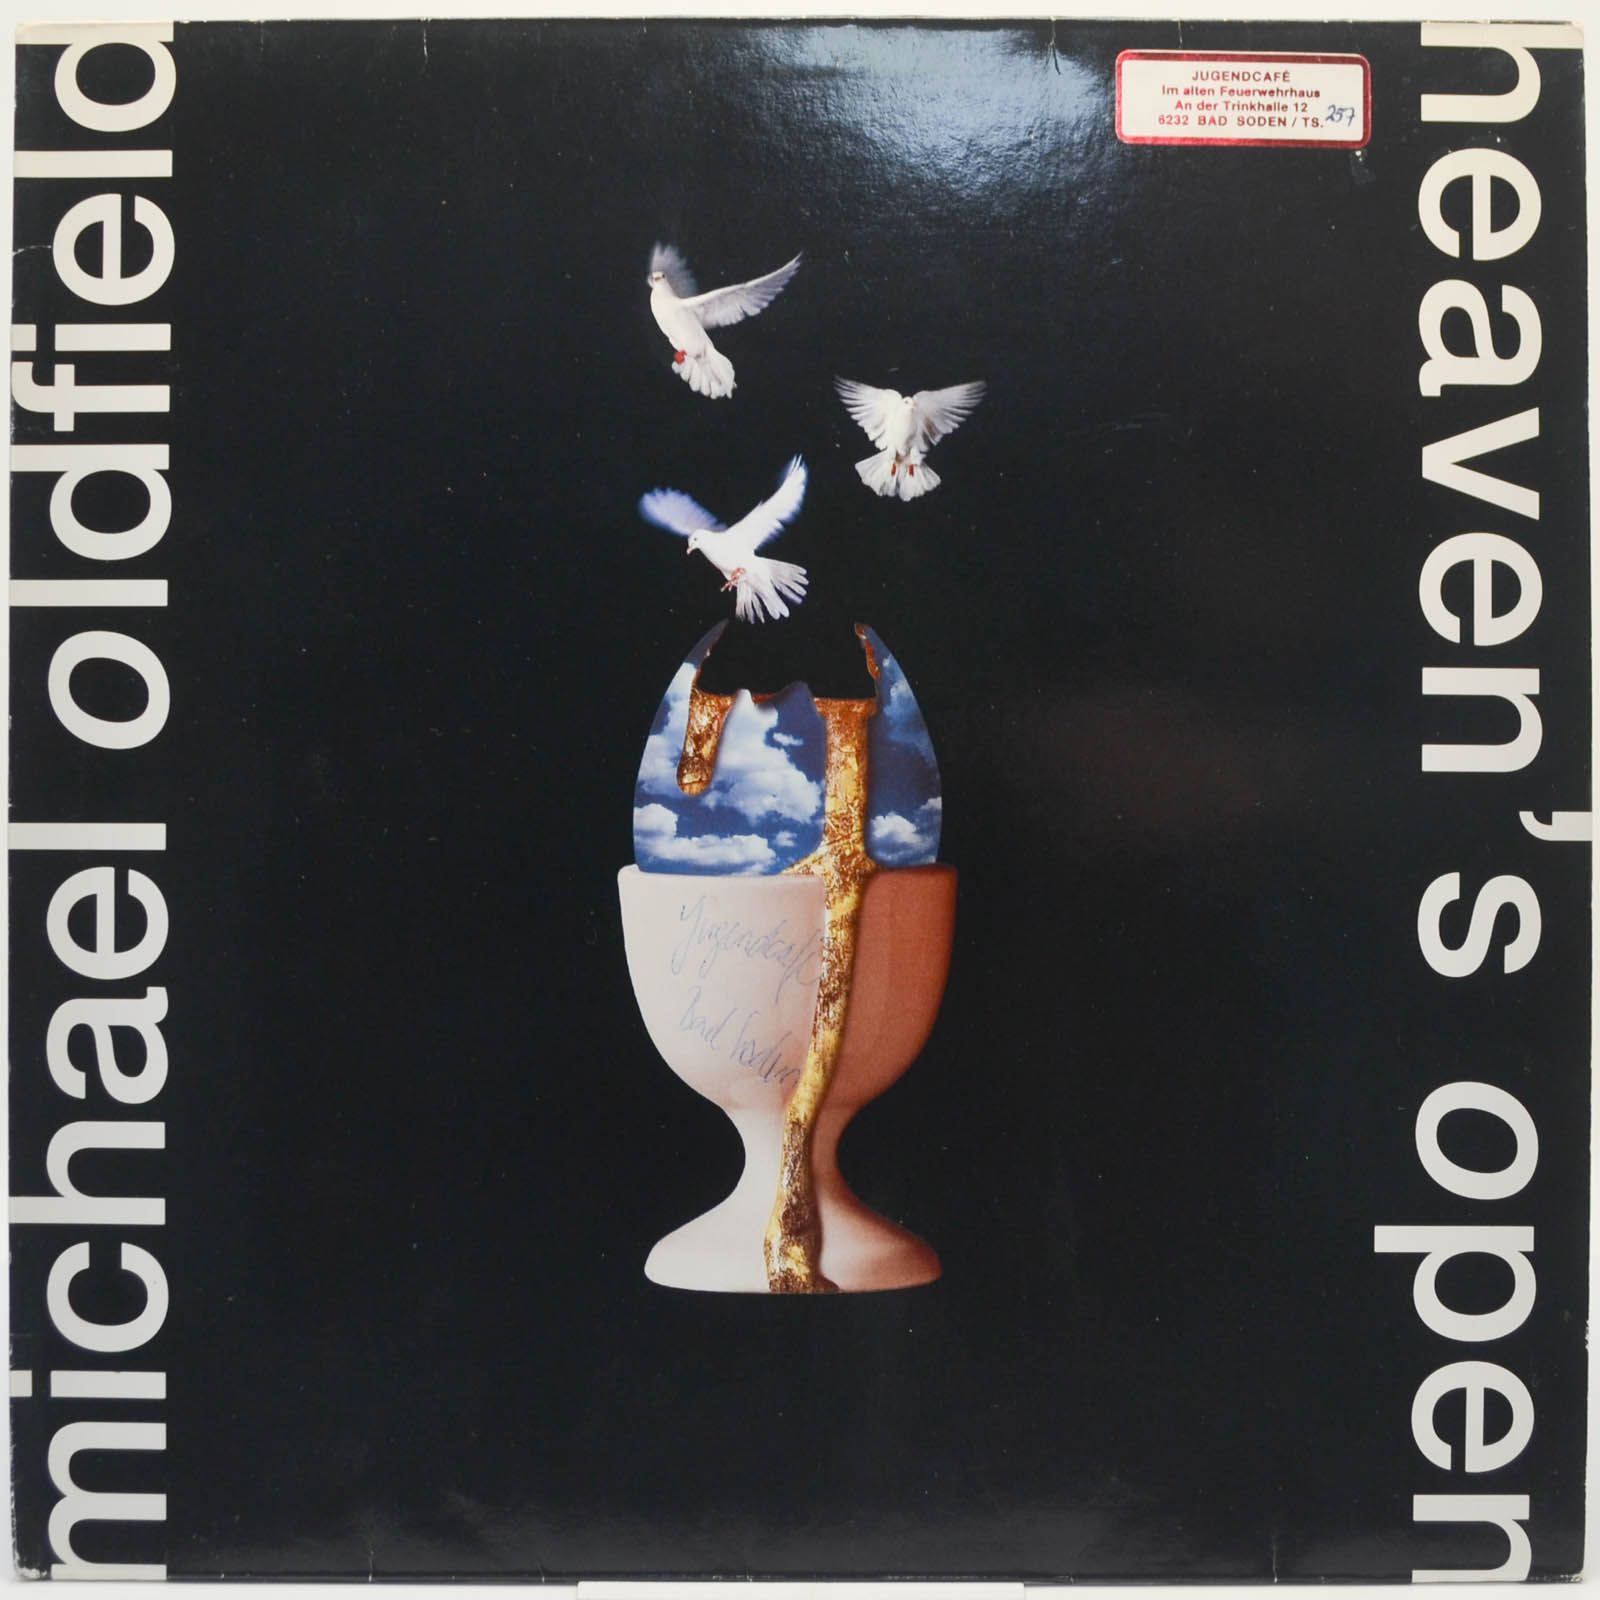 Michael Oldfield — Heaven's Open, 1991